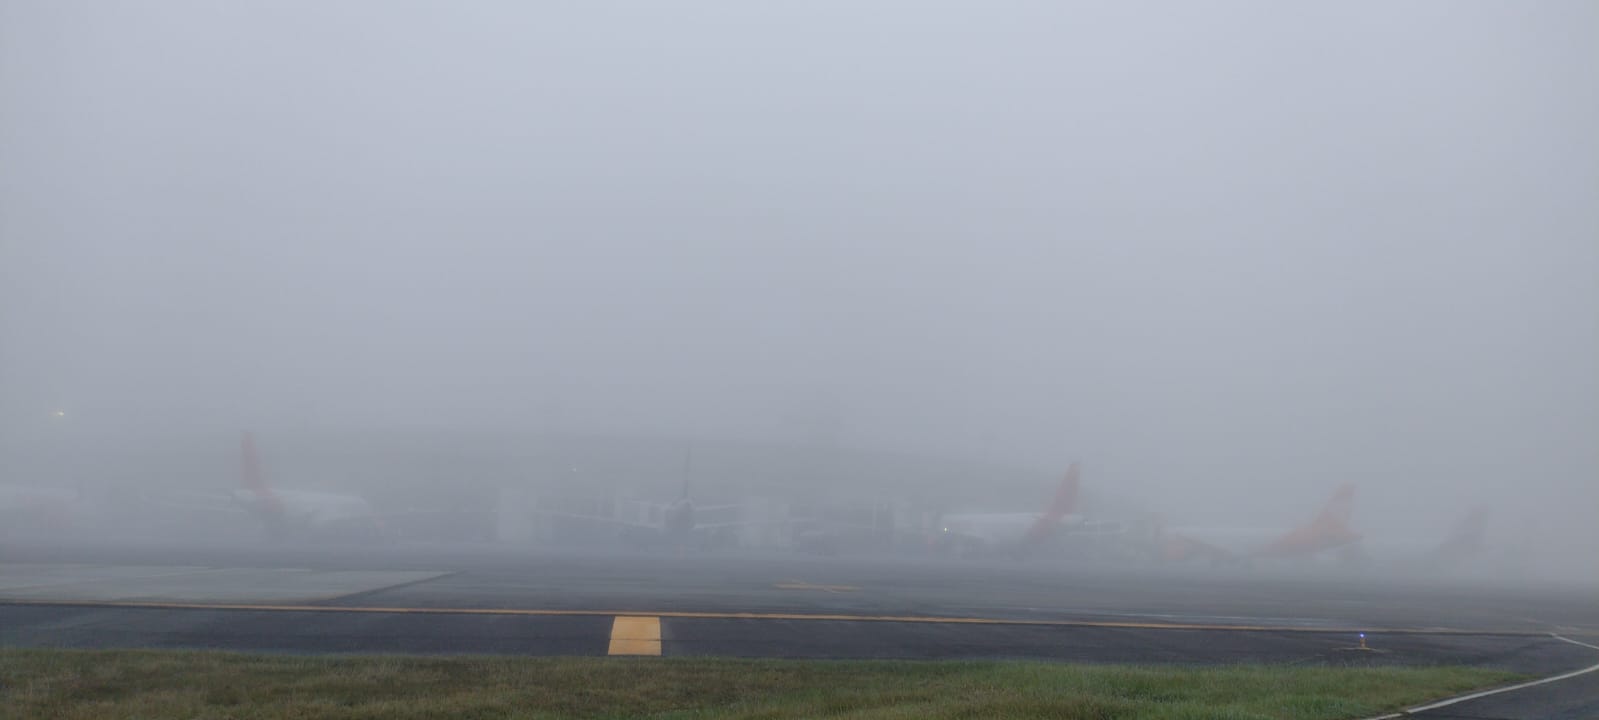 Aeropuerto José María Córdova presenta retrasos en al menos 38 vuelos por cuenta de la neblina